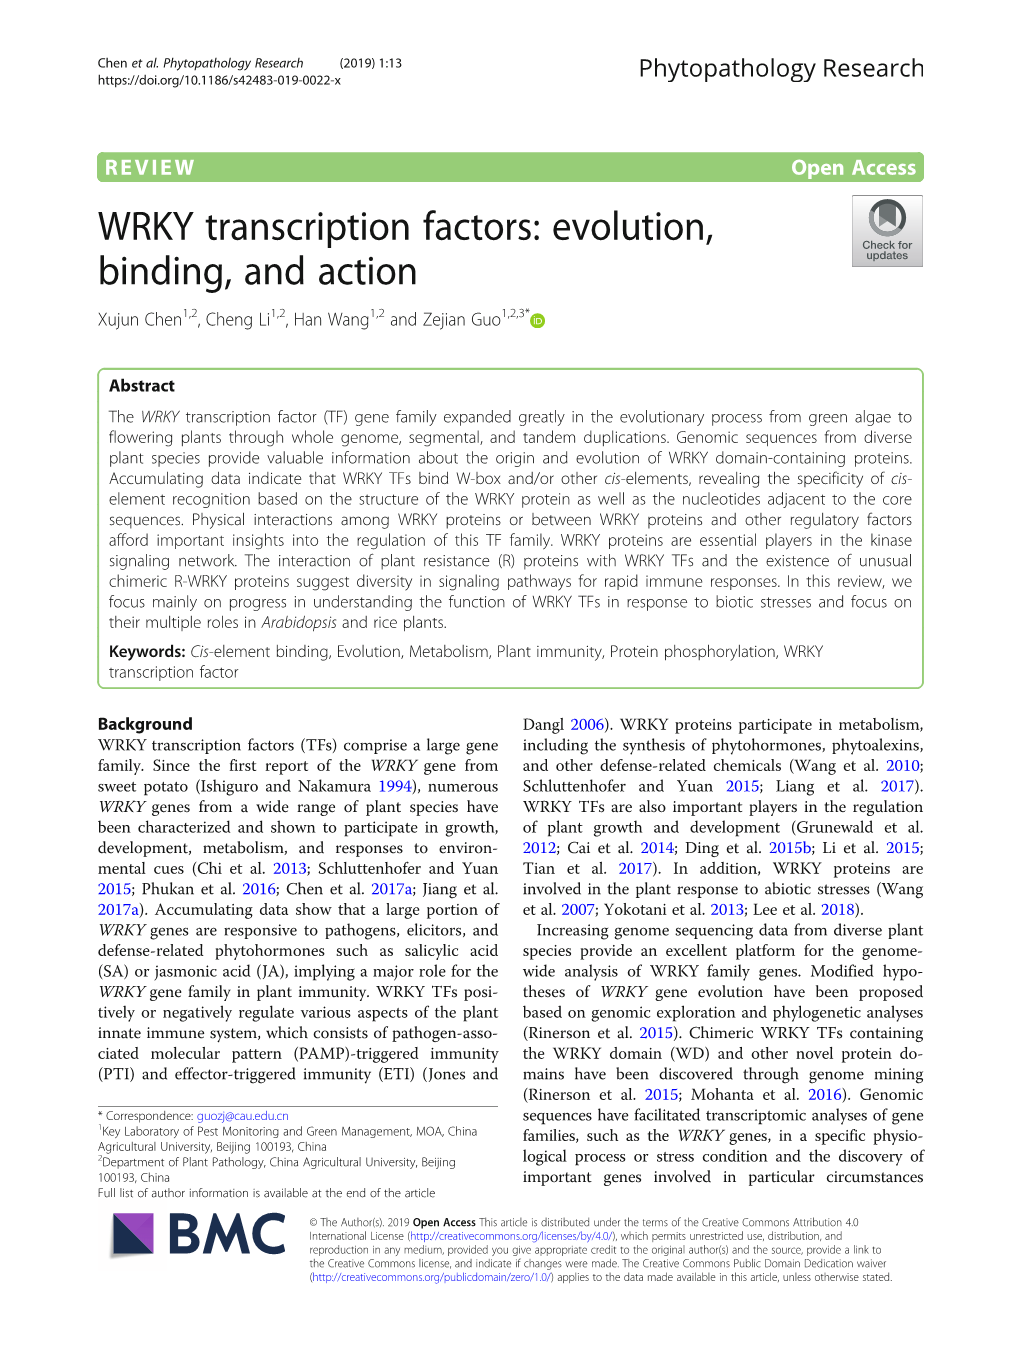 WRKY Transcription Factors: Evolution, Binding, and Action Xujun Chen1,2, Cheng Li1,2, Han Wang1,2 and Zejian Guo1,2,3*